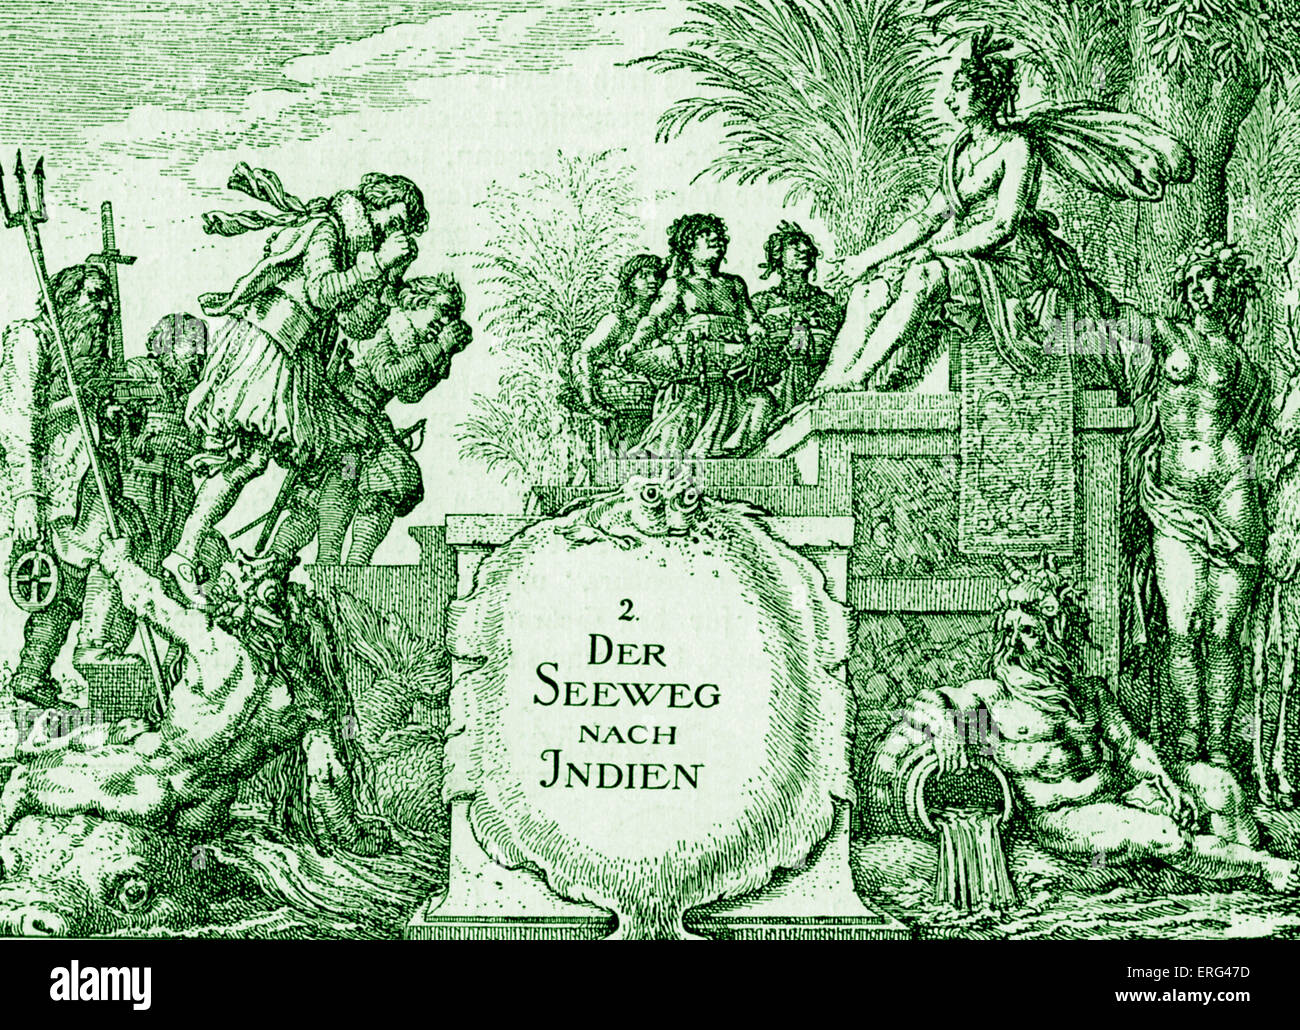 Der Seeweg nach Indien. Titel Seite mit Kupfer-Platte, die Gravur von "Journalen van de Reysen der Ostindie", Amsterdam, 1619. Niederländische Veröffentlichung. Getönte Version. Stockfoto